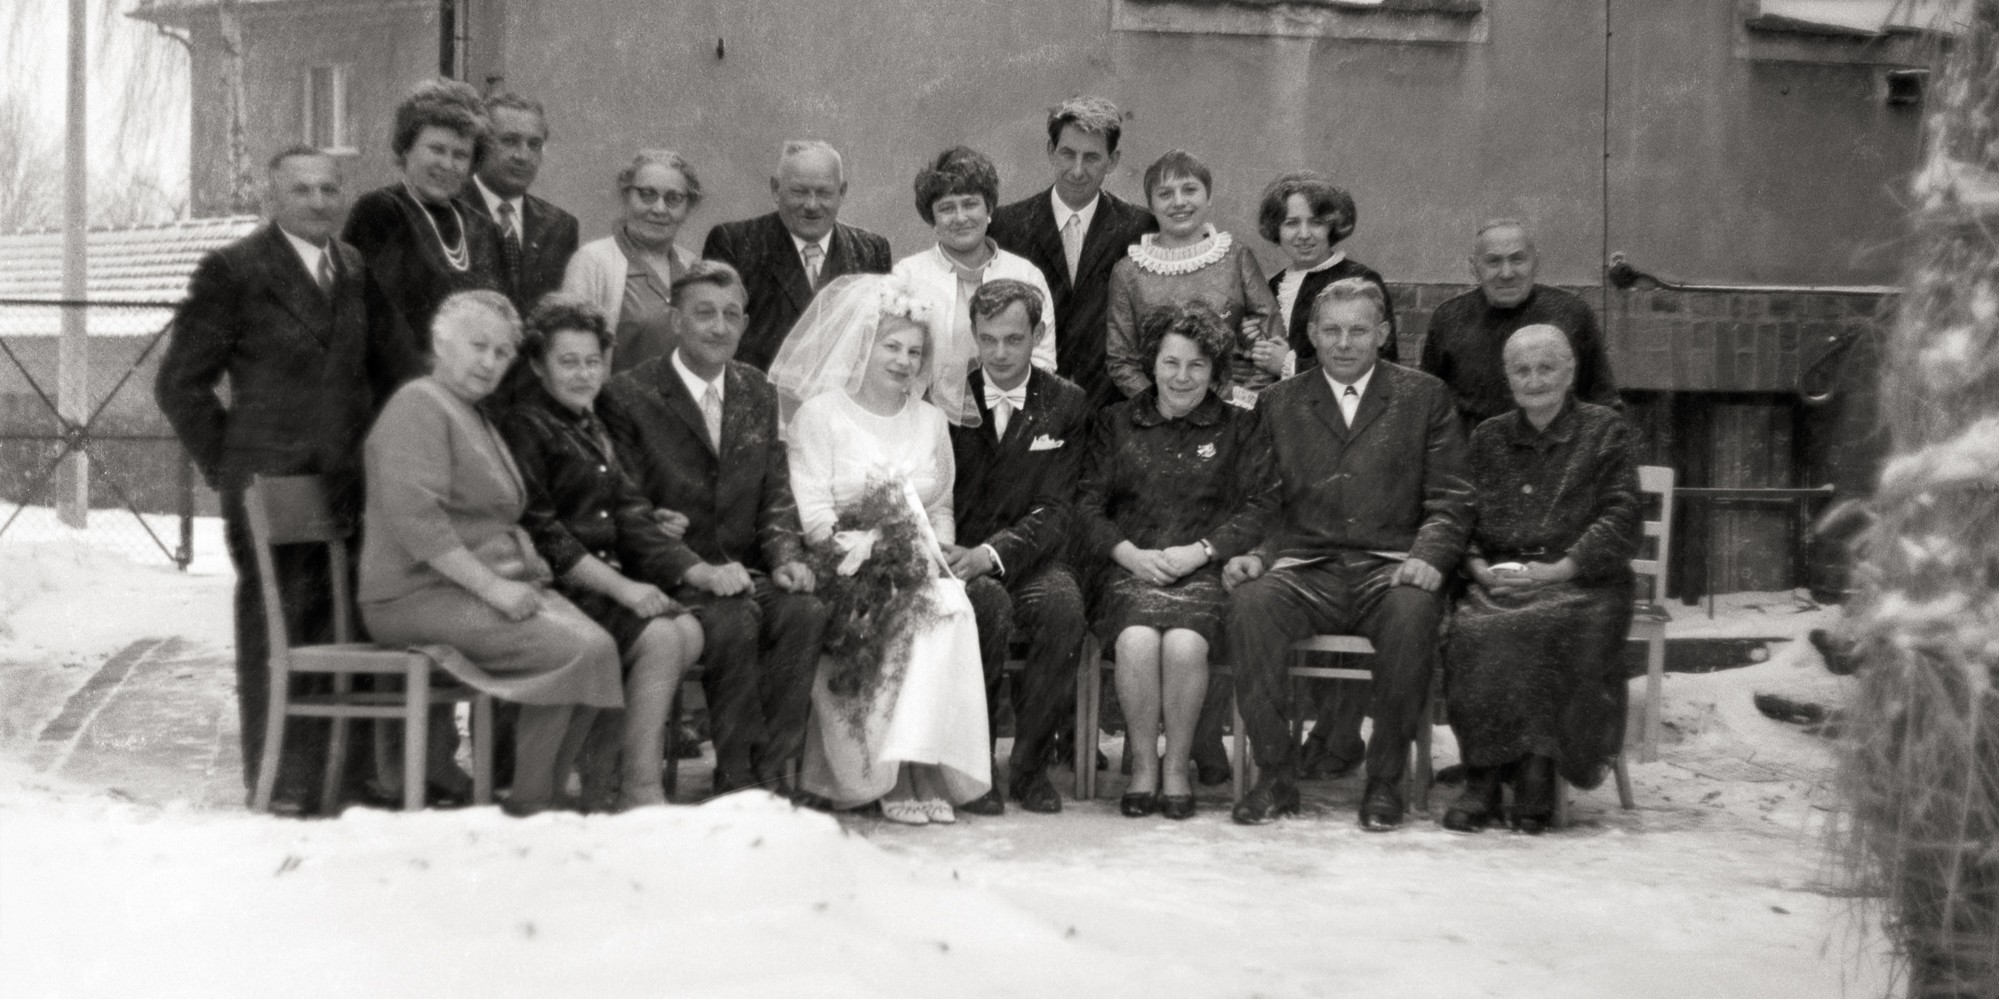 Hochzeitsgesellschaft von Helga und Hans-Georg Lehmann in heftigem Schneefall, 1969